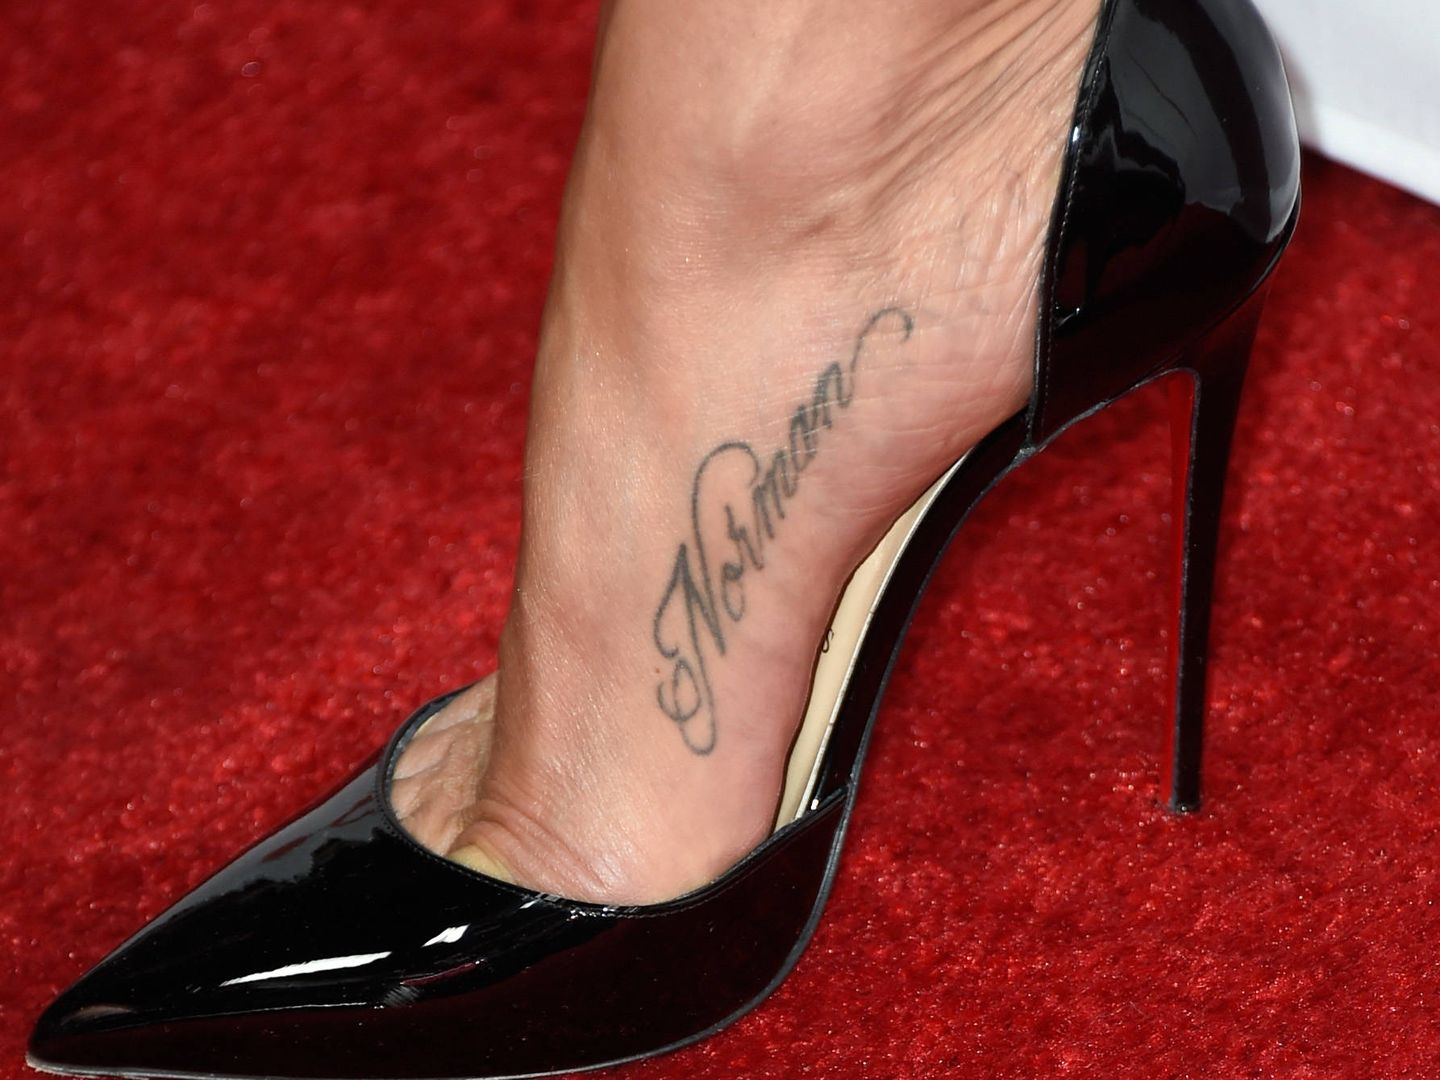  Jennifer Aniston lleva tatuado el nombre de su fallecido perro. (Getty)